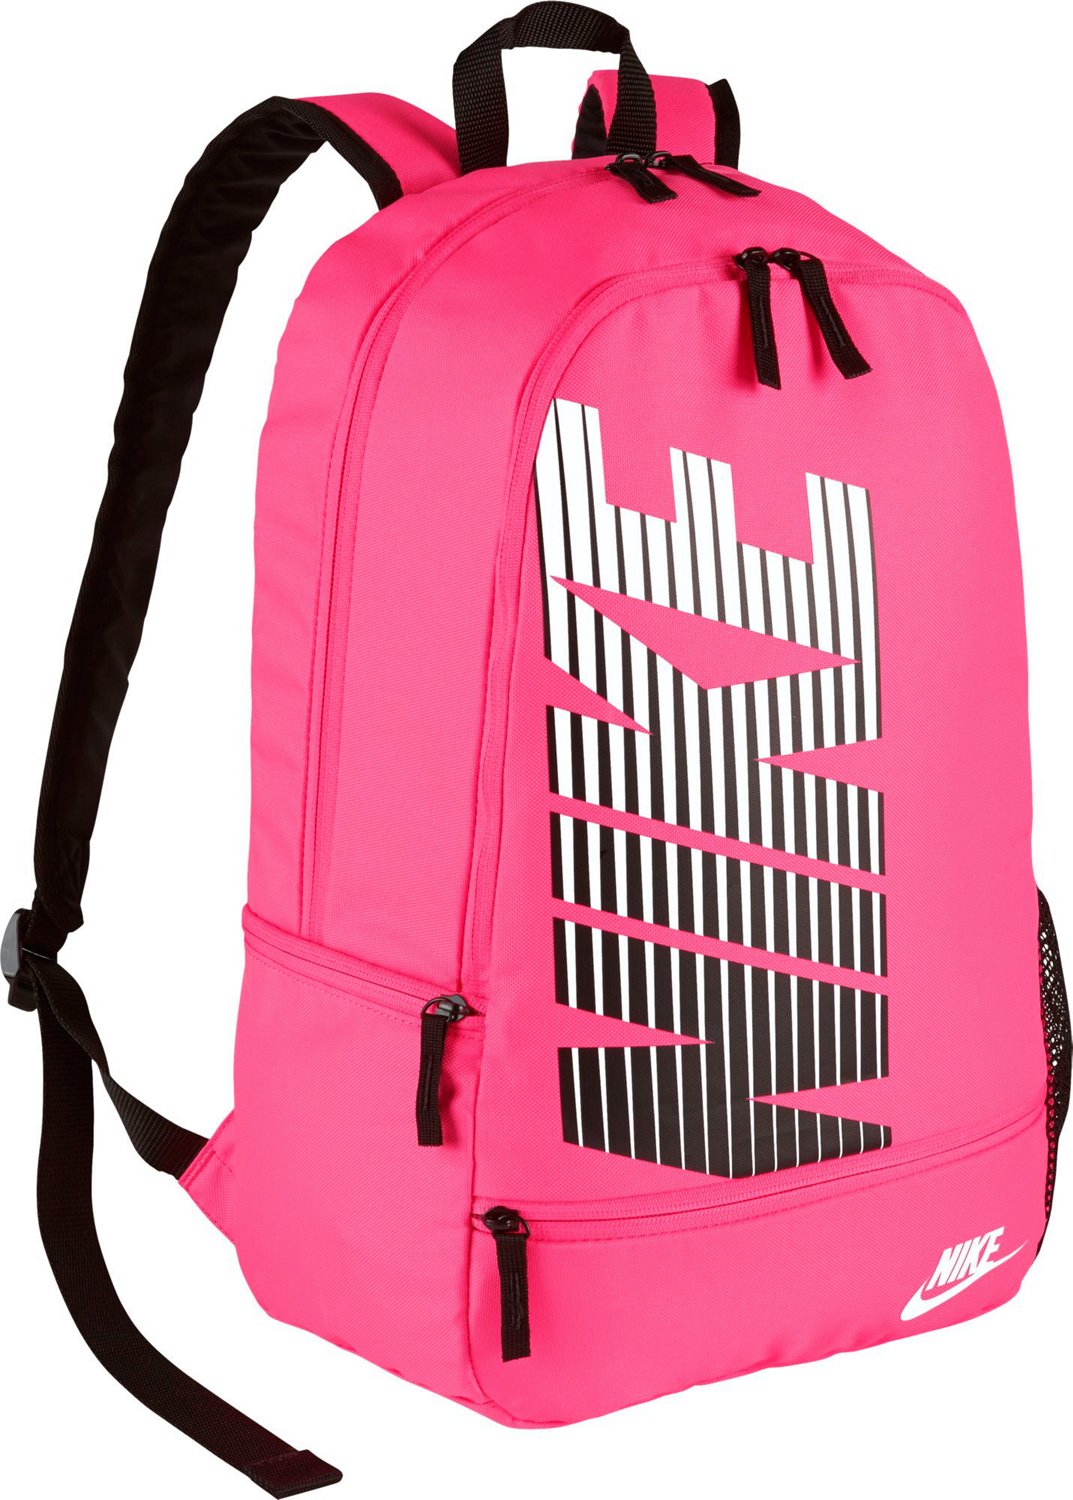 nike backpacks for teens